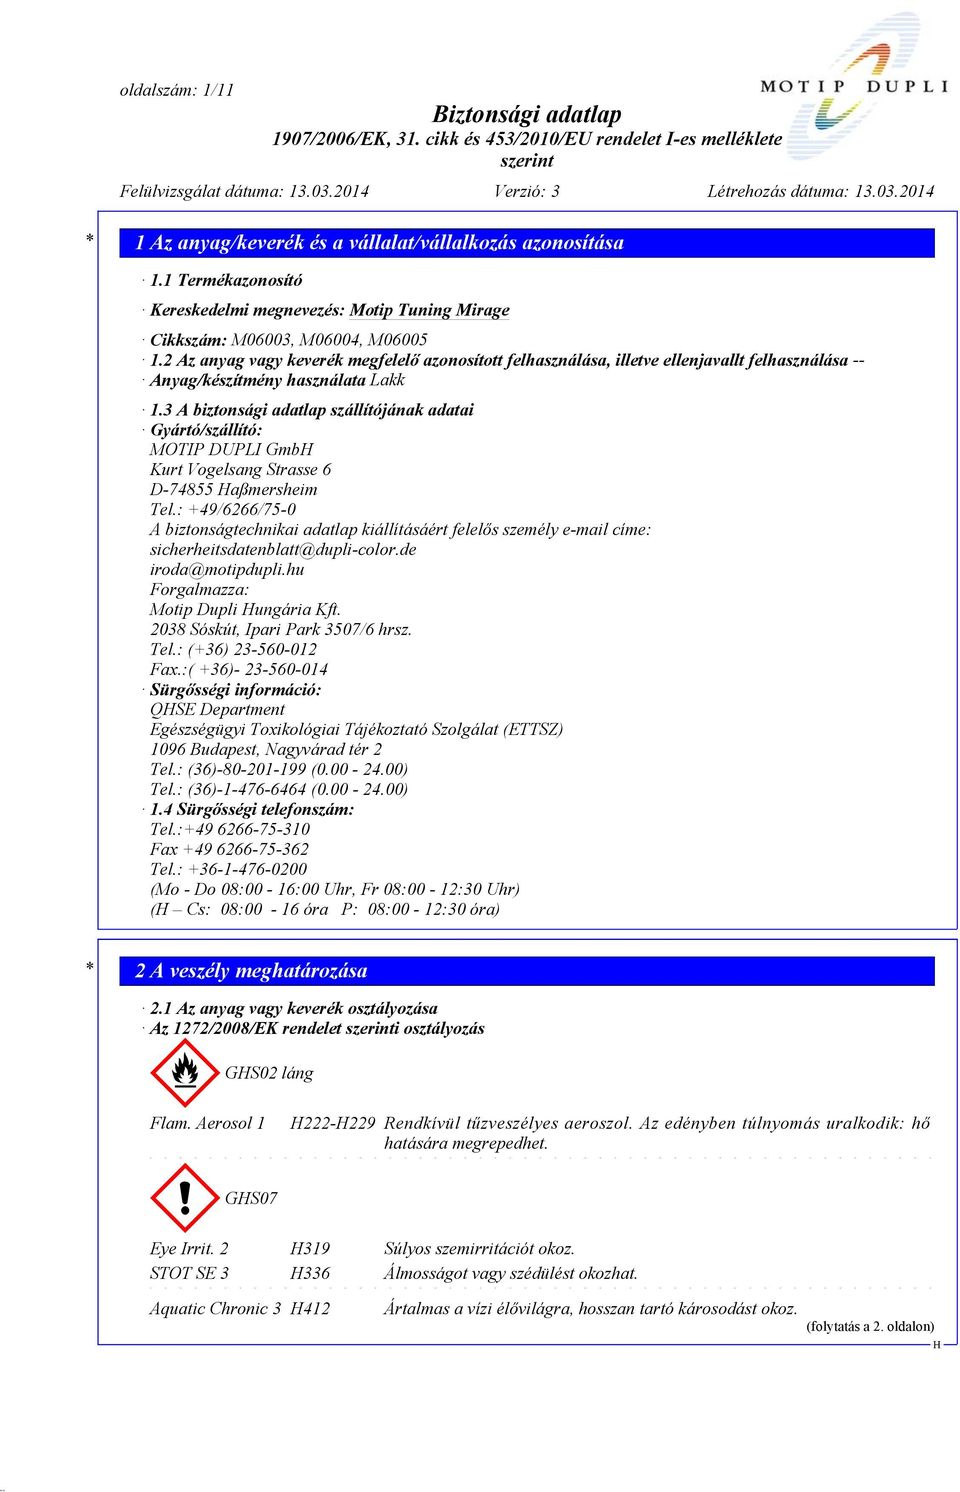 3 A biztonsági adatlap szállítójának adatai Gyártó/szállító: MOTIP DUPLI Gmb Kurt Vogelsang Strasse 6 D-74855 aßmersheim Tel.